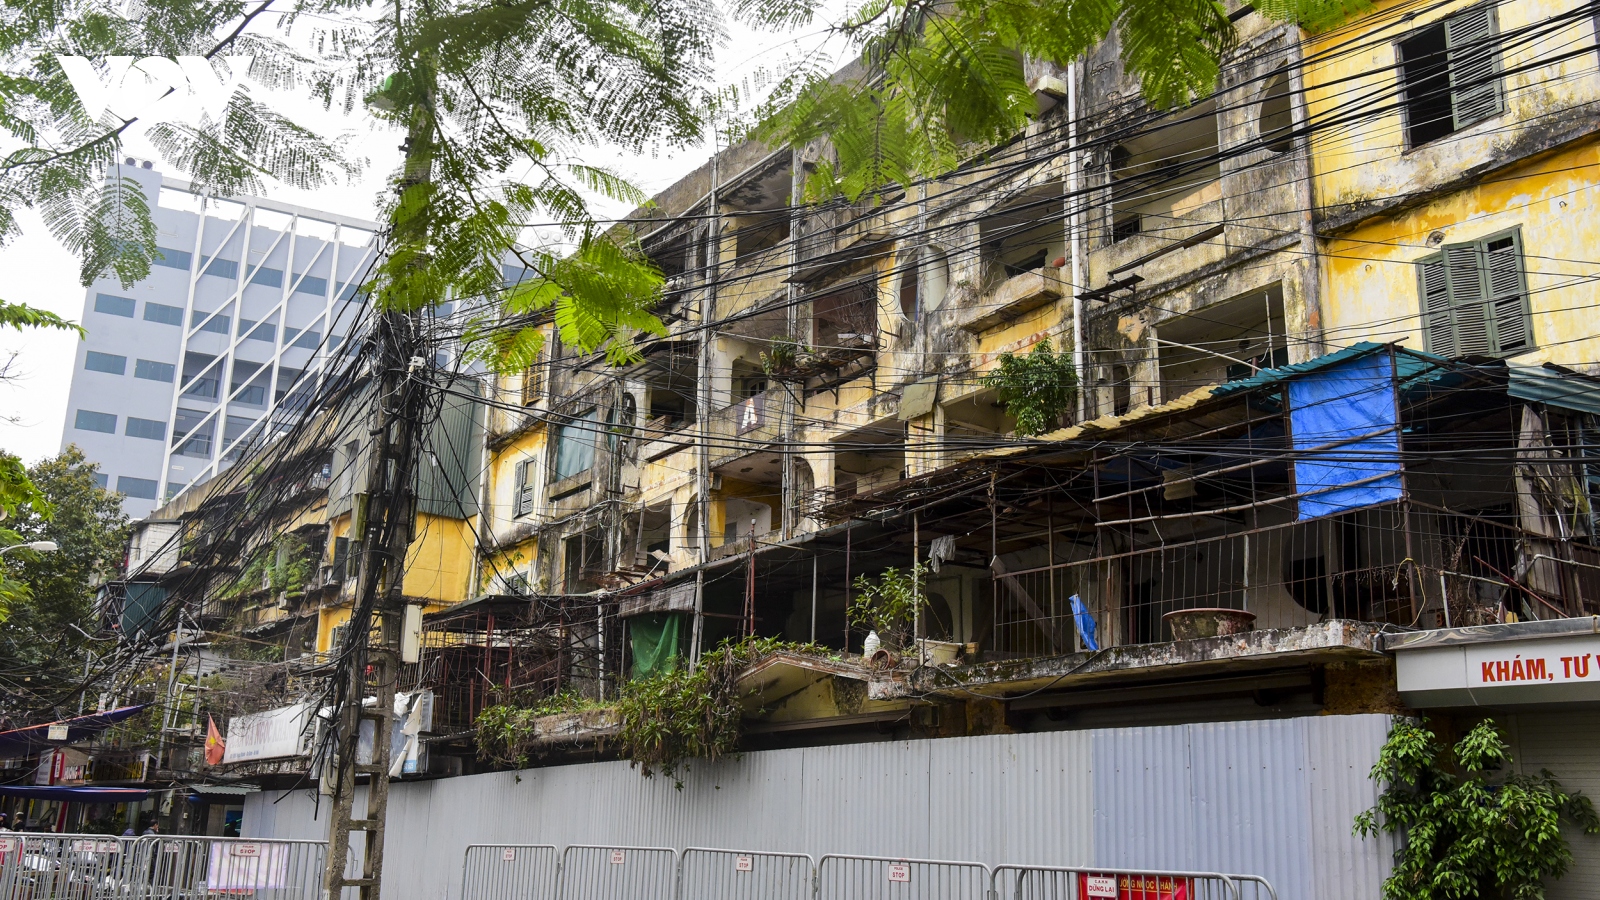 Cận cảnh 4 chung cư ở Hà Nội xuống cấp trầm trọng, nguy cơ sụp đổ bất kỳ lúc nào